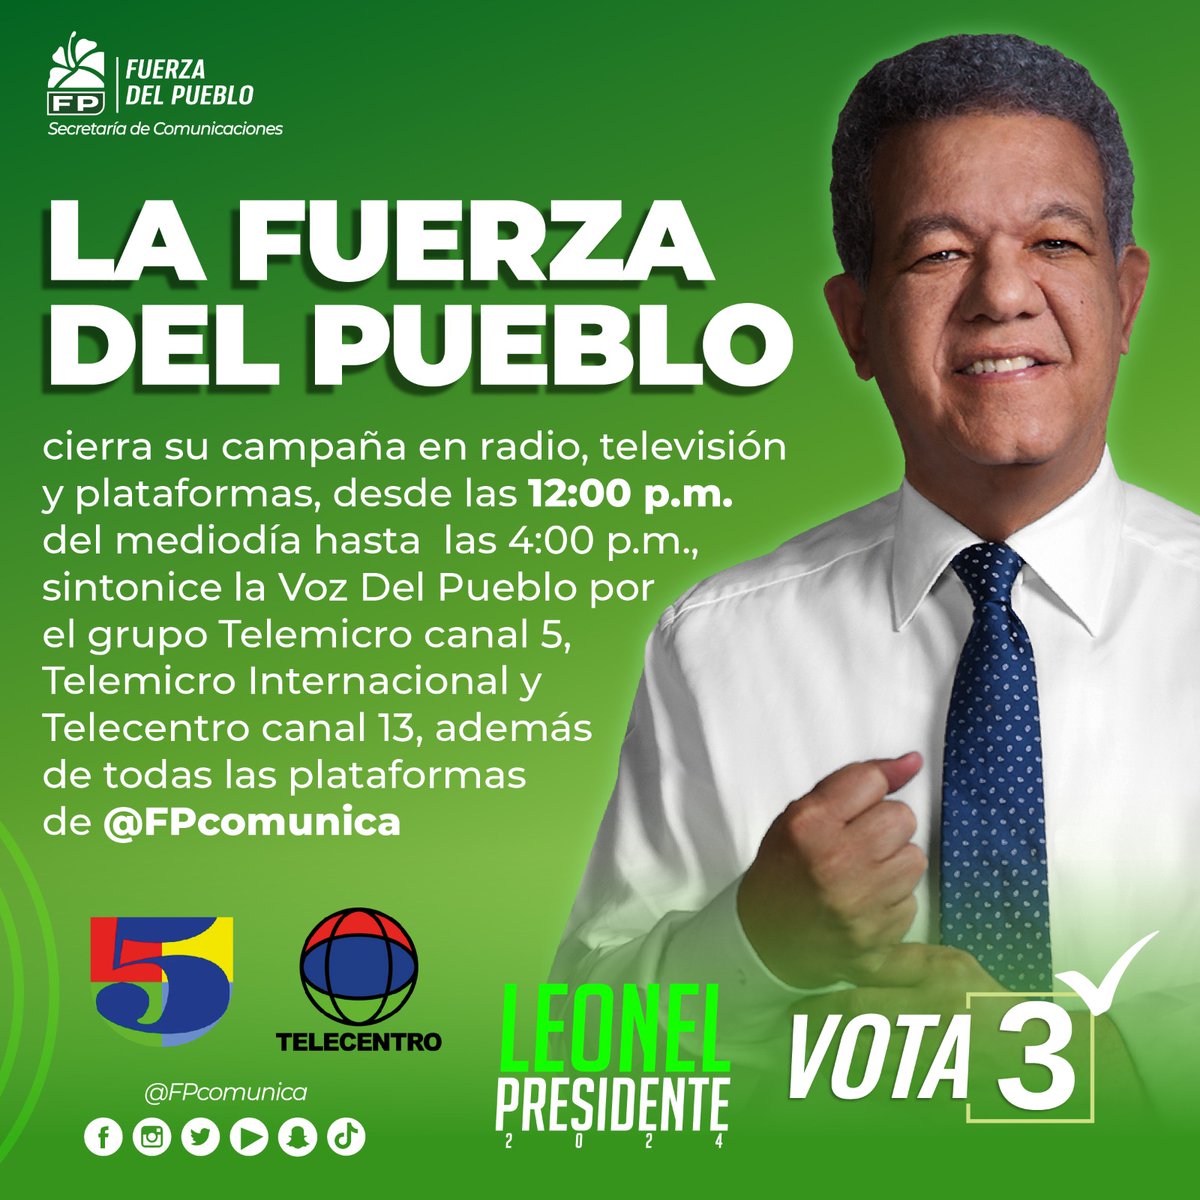 Hoy, a través de todas las plataformas digitales del partido Fuerza Del Pueblo, te puedes conectar con el Cierre de campaña. #FuerzaDelPueblo #Vota3